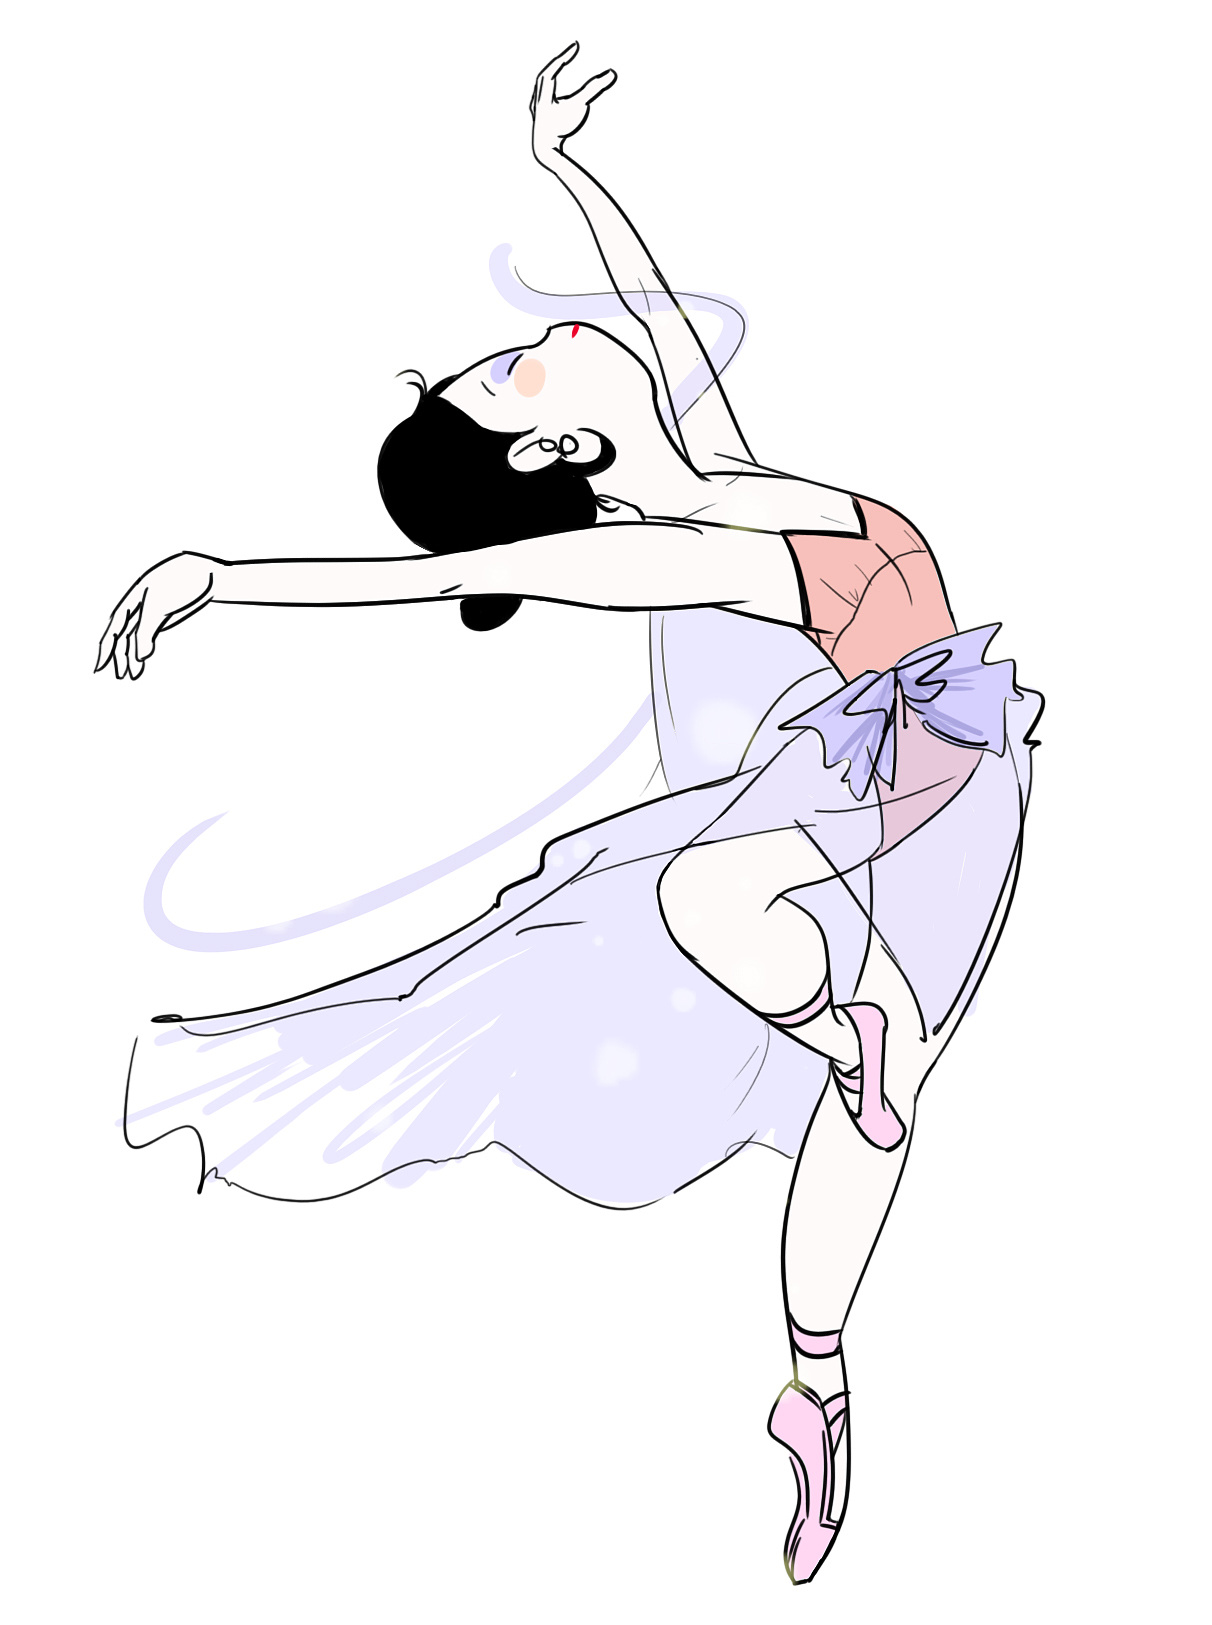 芭蕾舞者怎么画,最漂亮芭蕾舞者简笔画 - 伤感说说吧